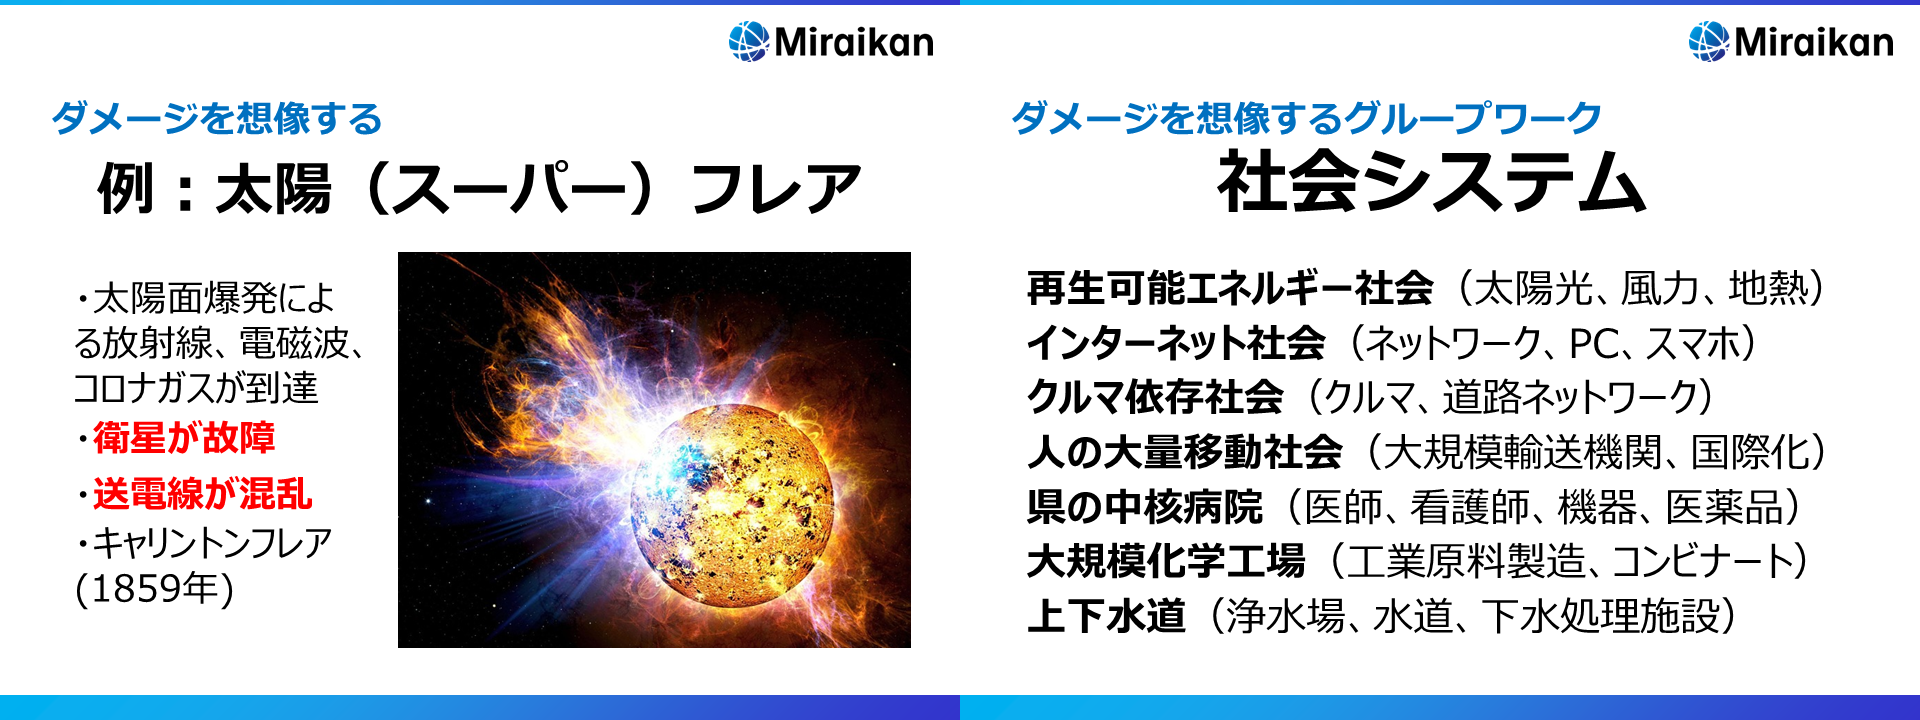 https://blog.miraikan.jst.go.jp/images/20160318_tani05.png